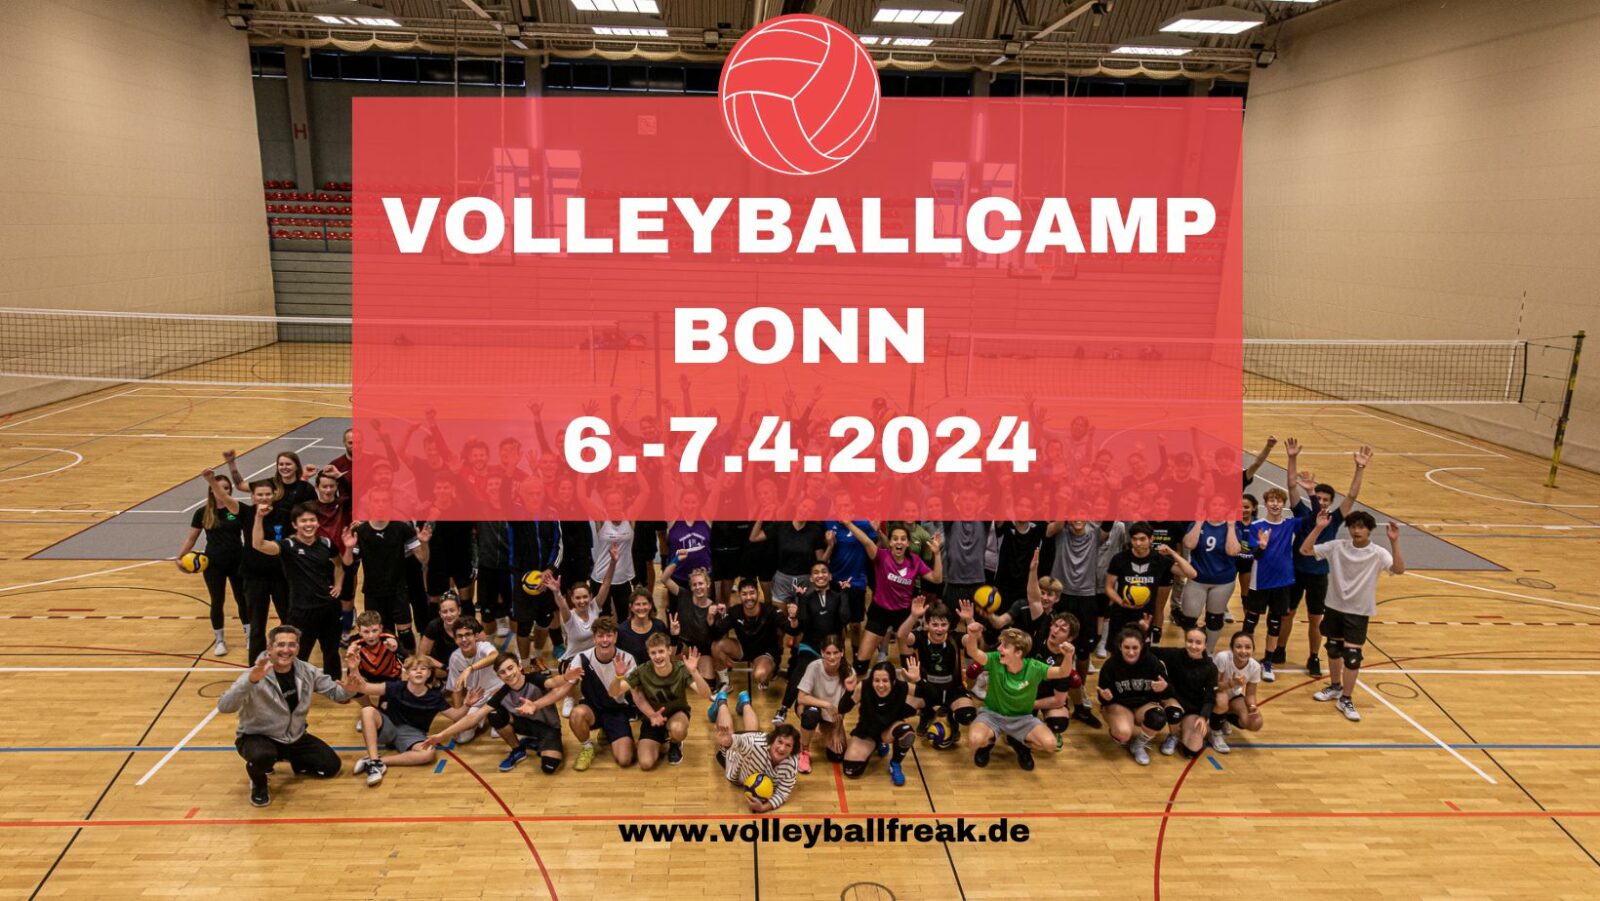 Hallenvolleyballcamp in Bonn vom 6.-7.4.2024